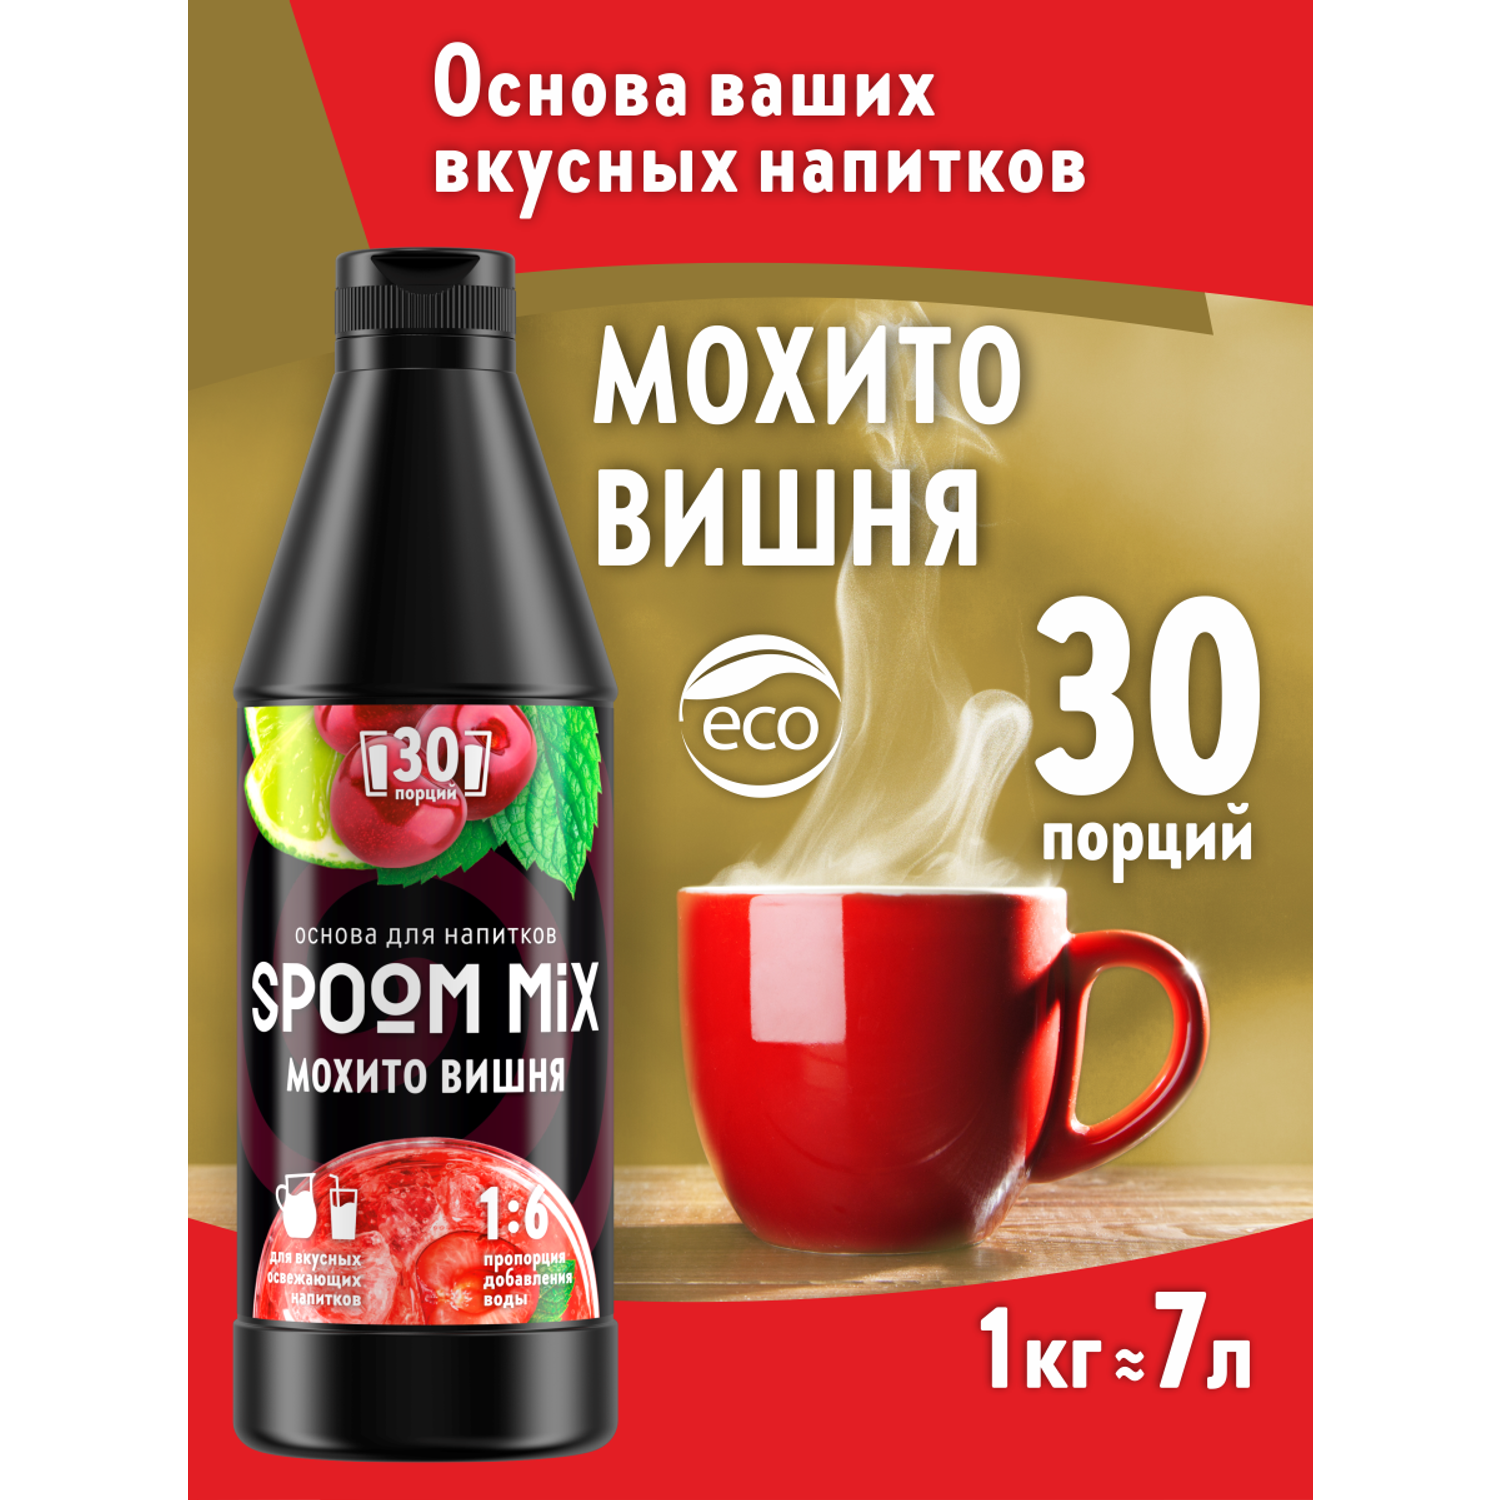 Основа для напитков SPOOM MIX Мохито вишня 1 кг - фото 1